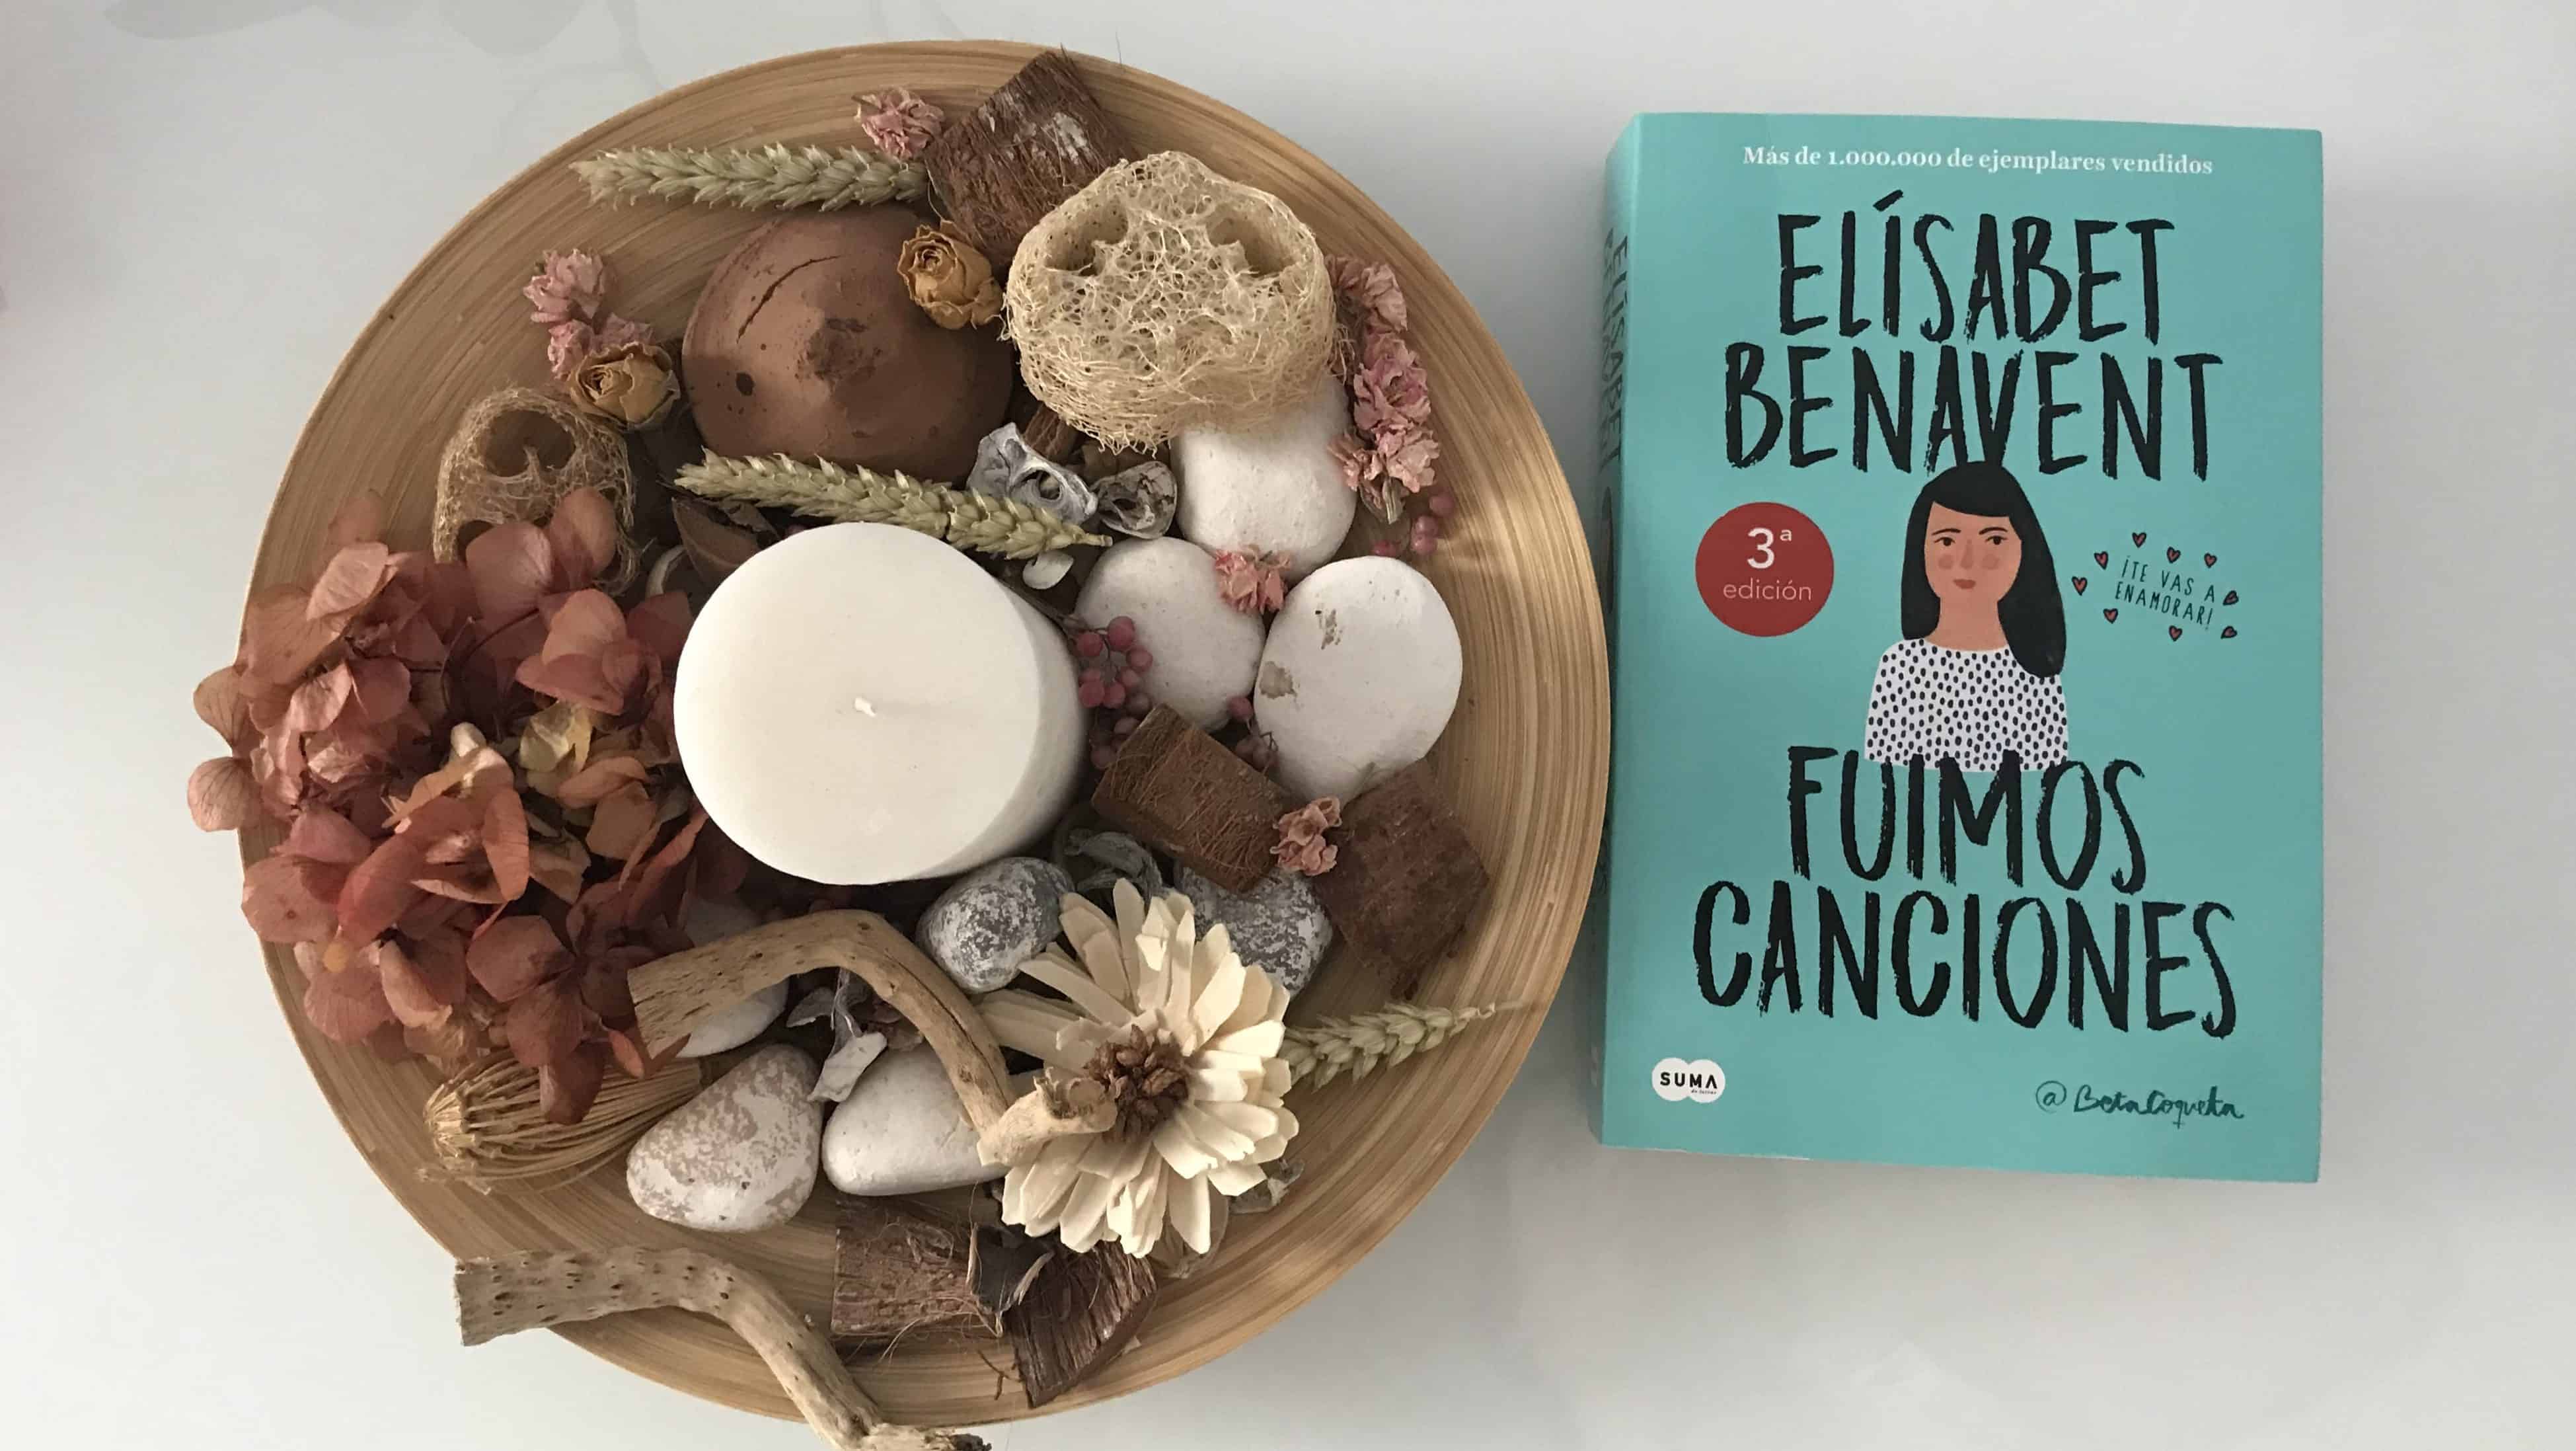 FUIMOS CANCIONES, de Elísabet Benavent